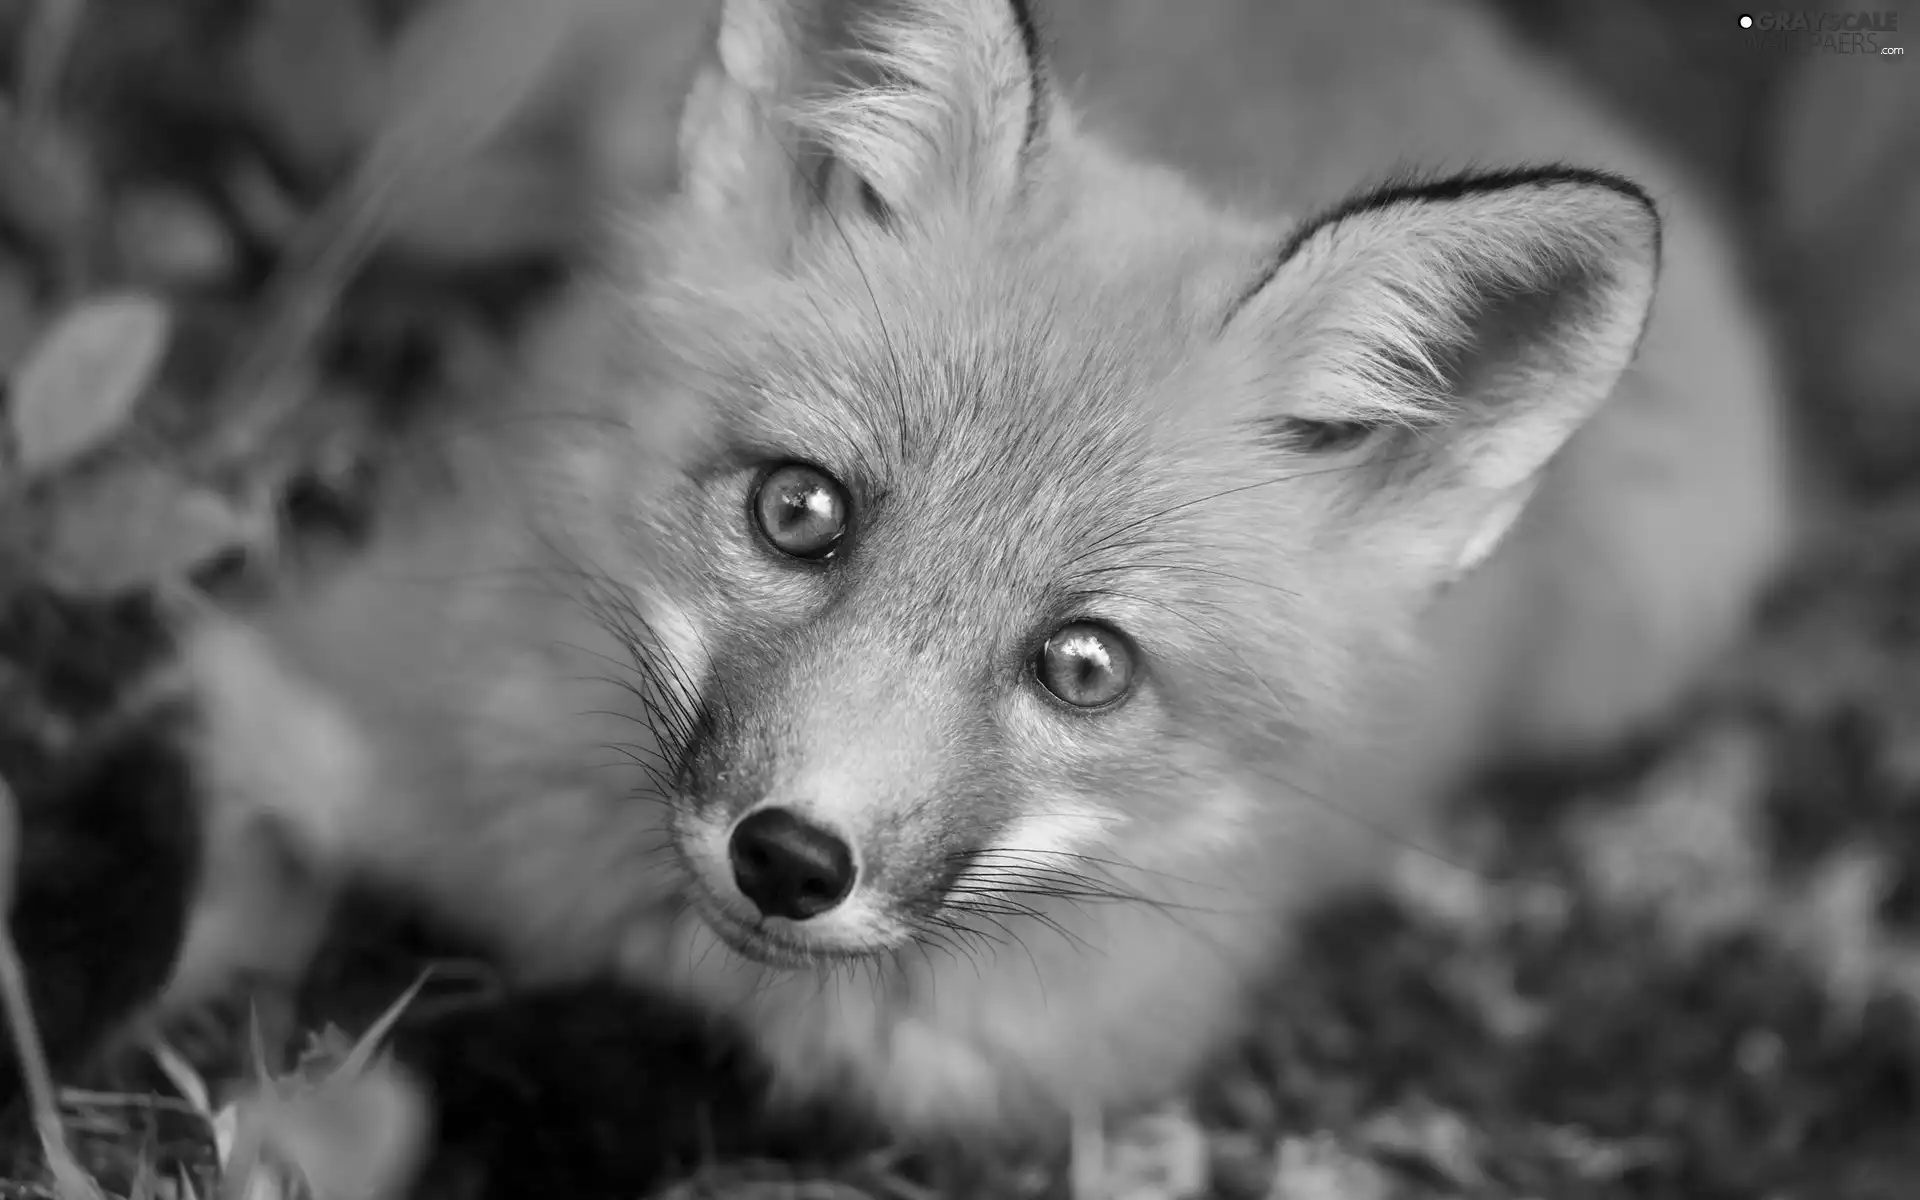 Fox, curiosity, ears, mouth